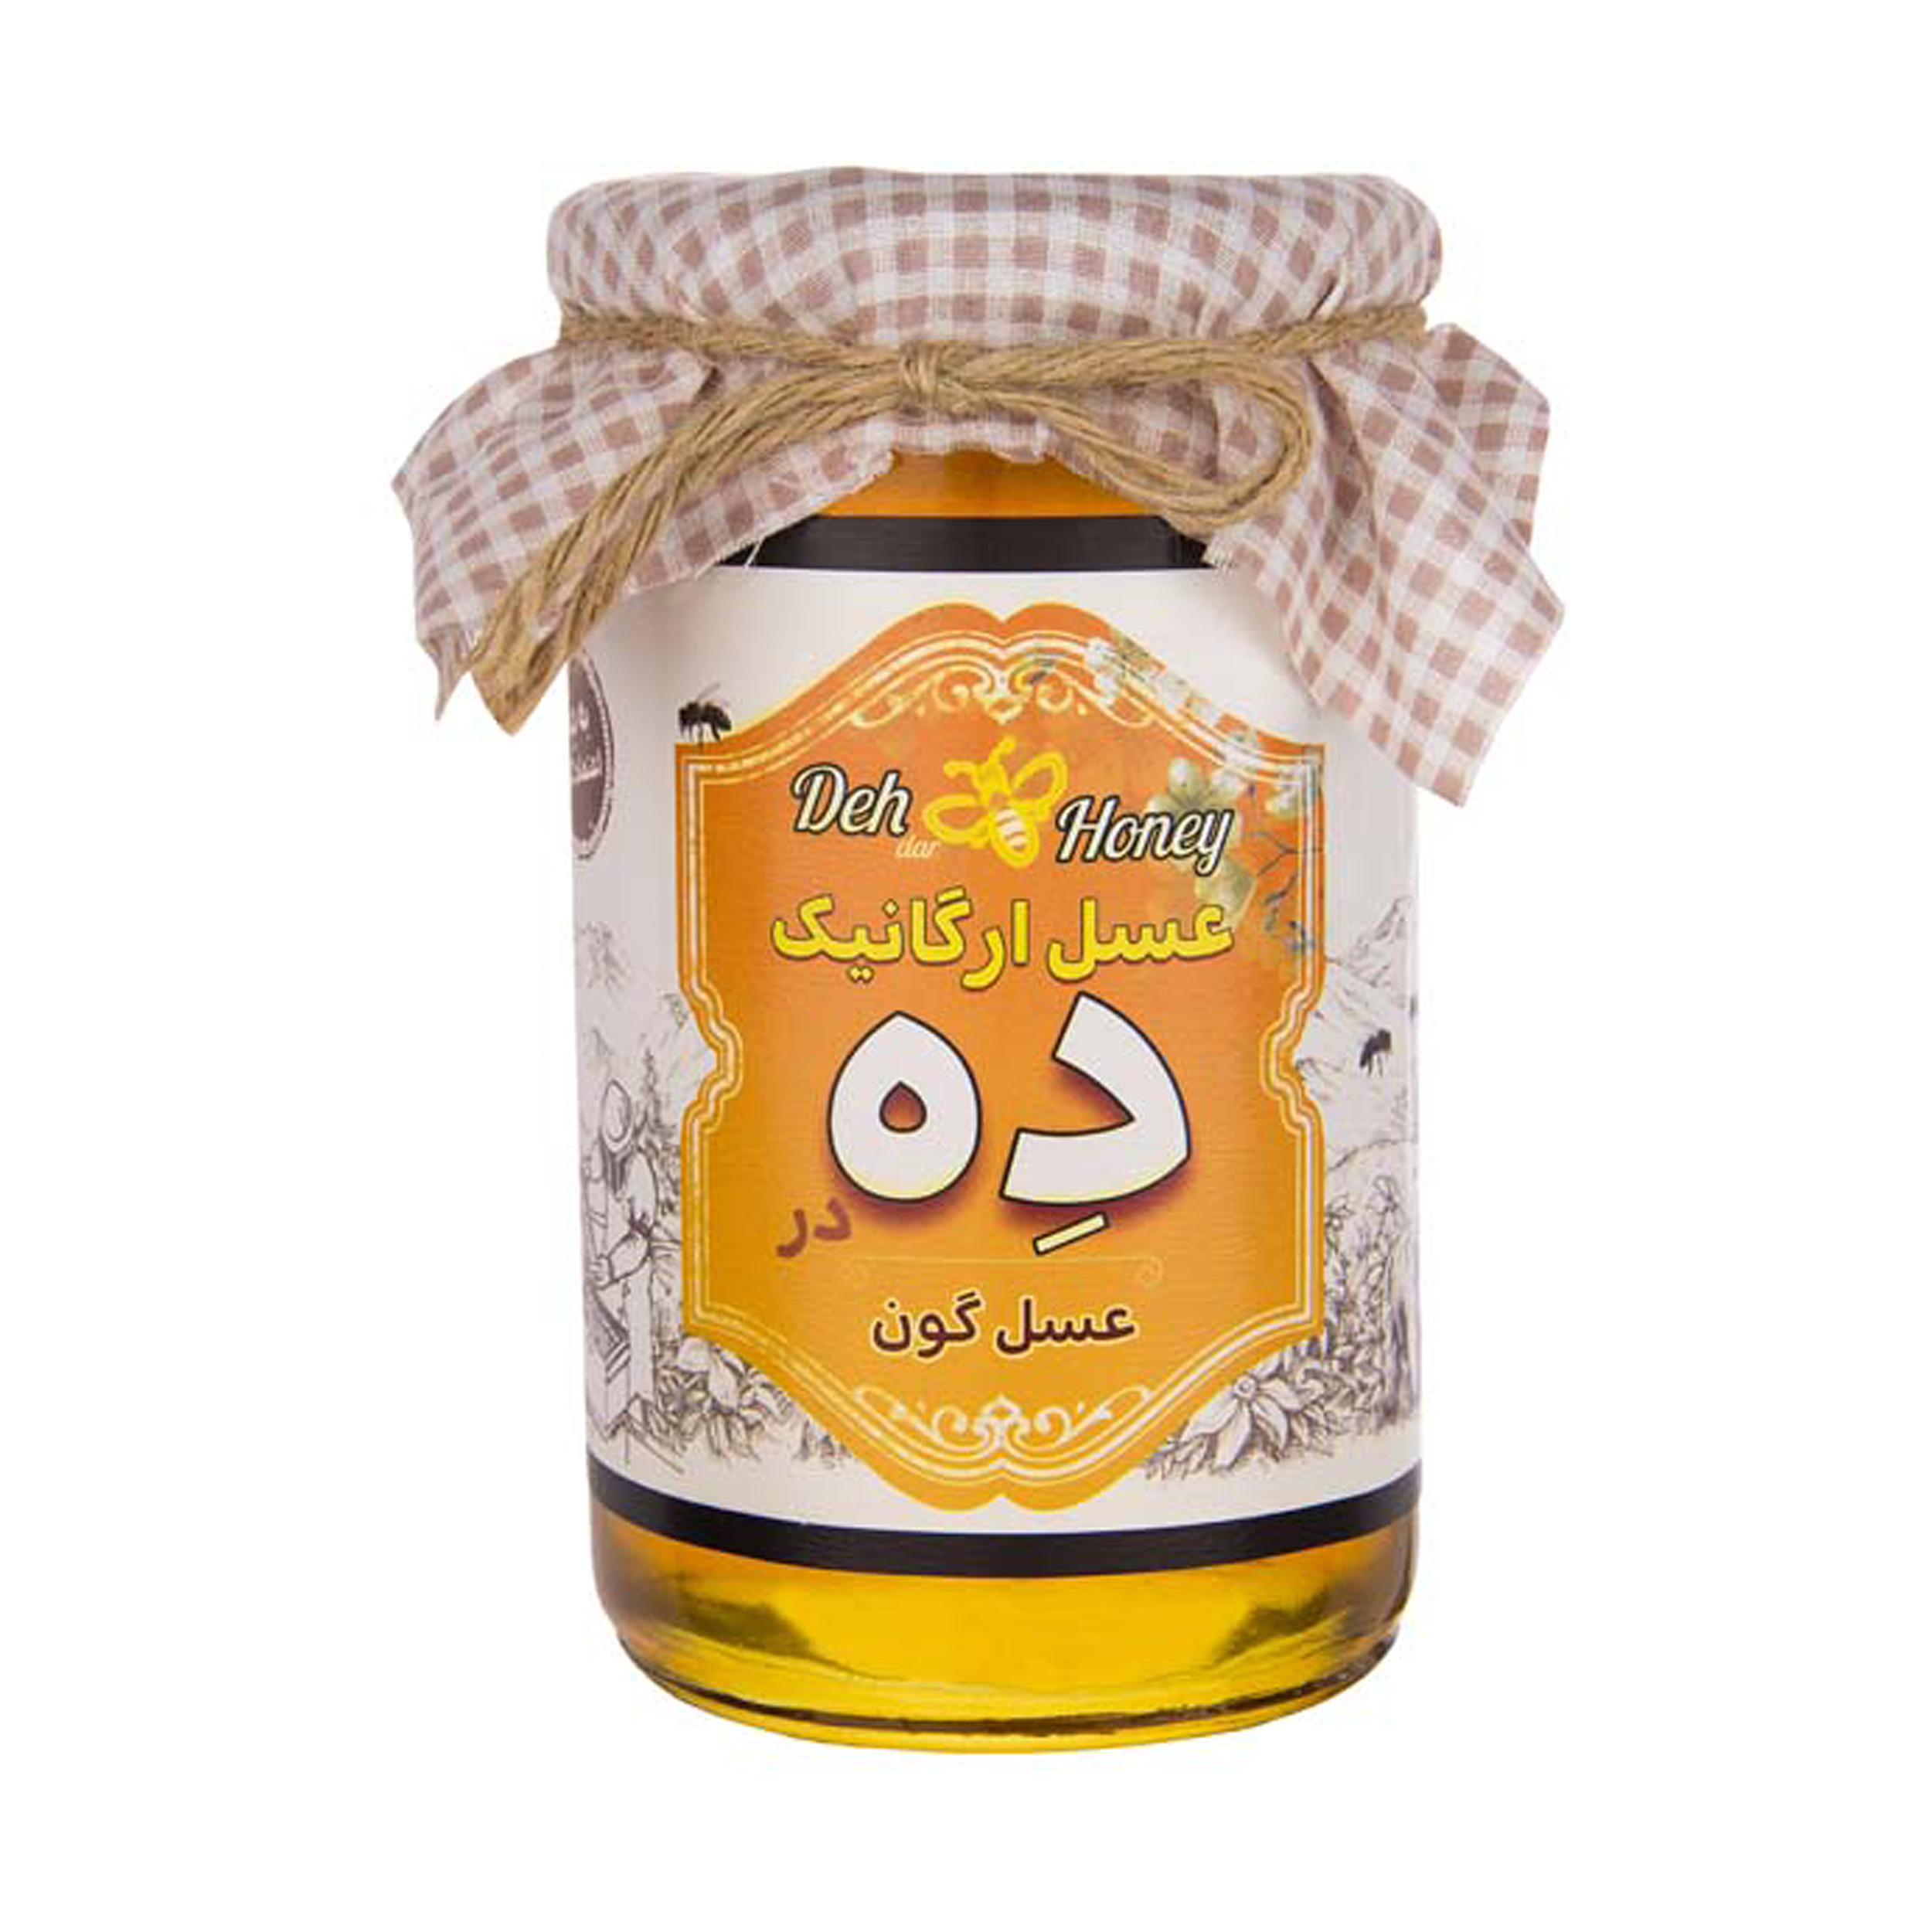 عسل گون ارگانیک ده در - 850 گرم